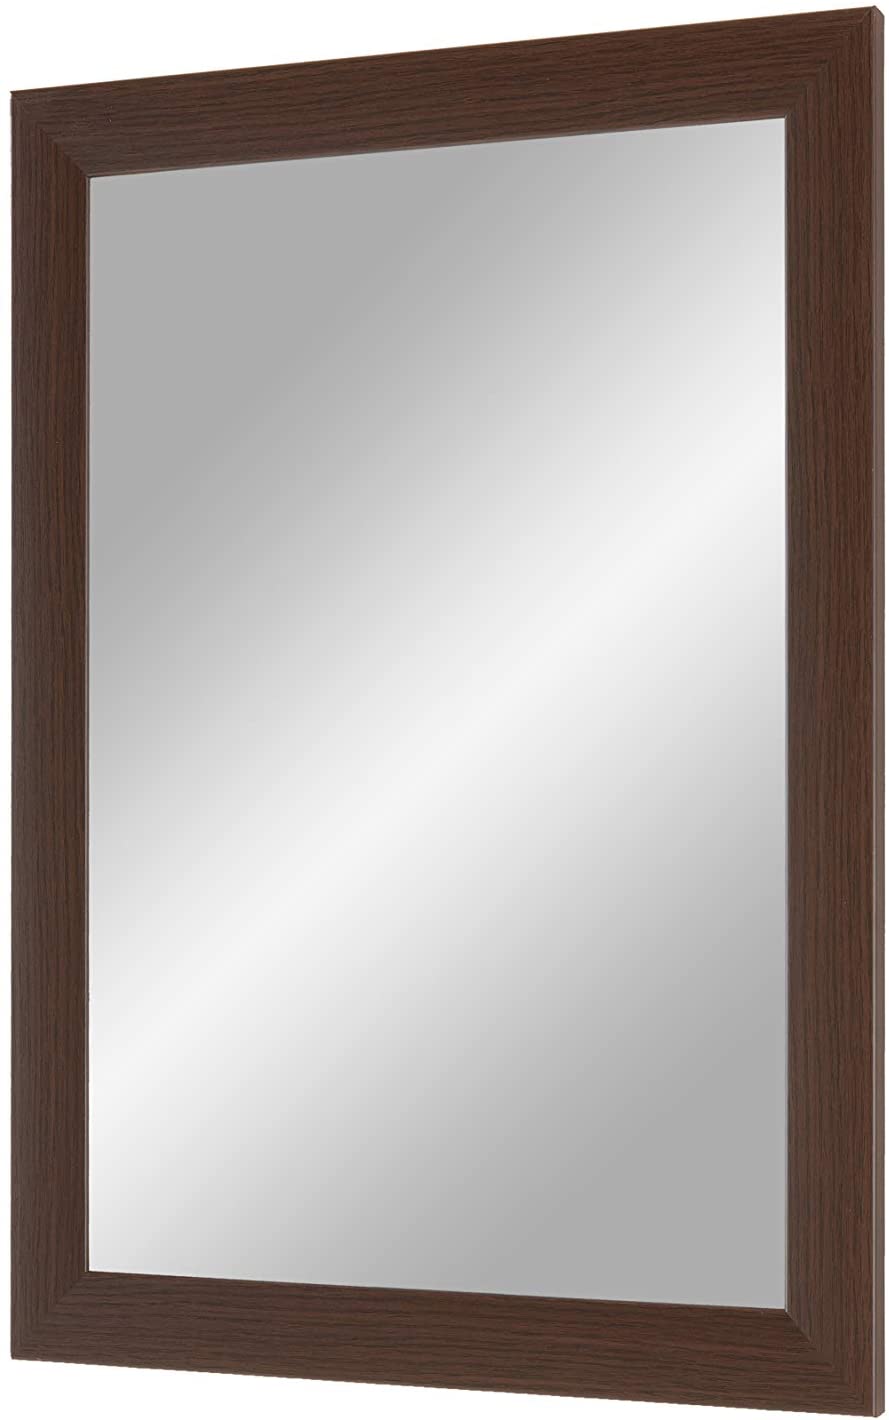 EXCLUSIV Wandspiegel nach Maß (Wenge Braun), Maßgefertigter Spiegelrahmen inkl. Spiegel und stabiler Rückwand mit Aufhängern